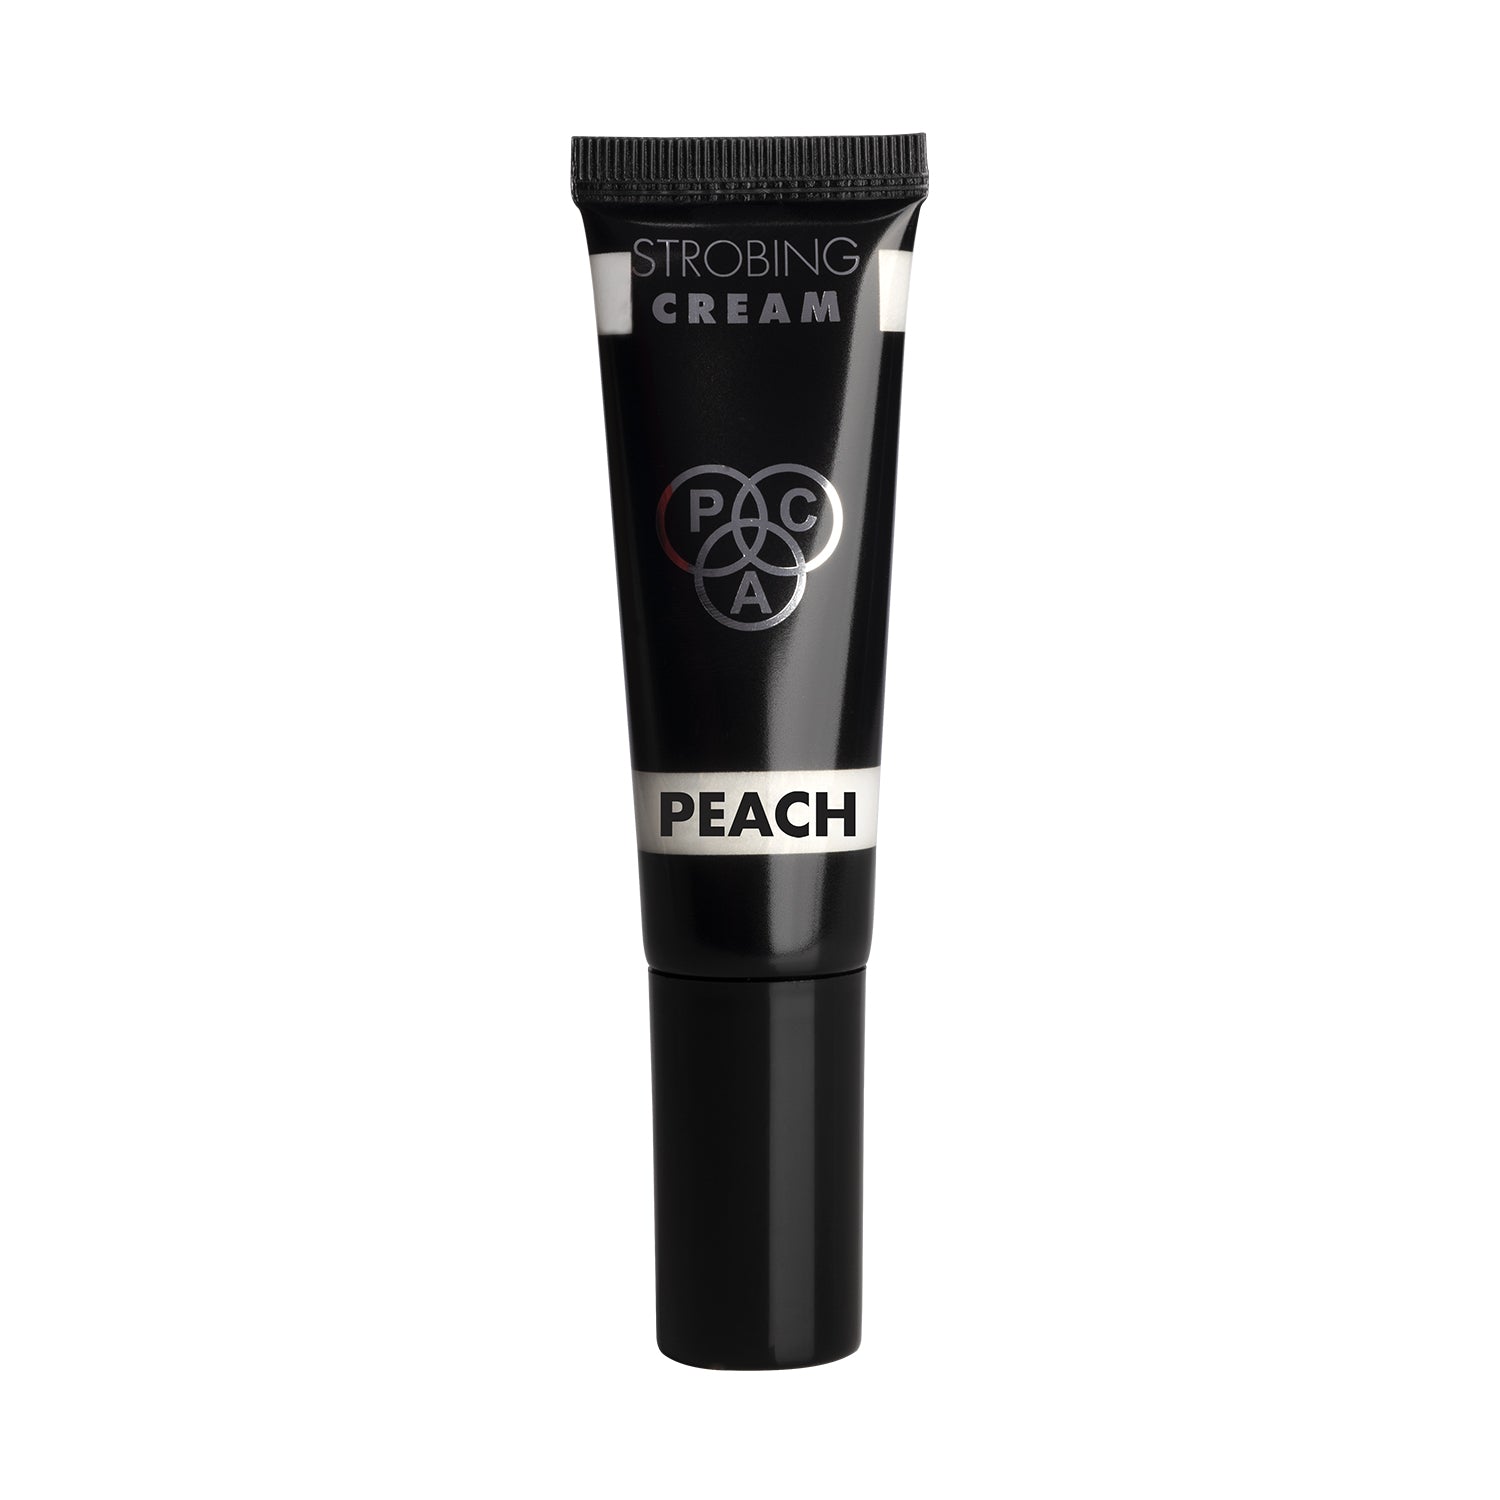 PAC Cosmetics Strobing Cream #Size_30 ml+#Color_Peach